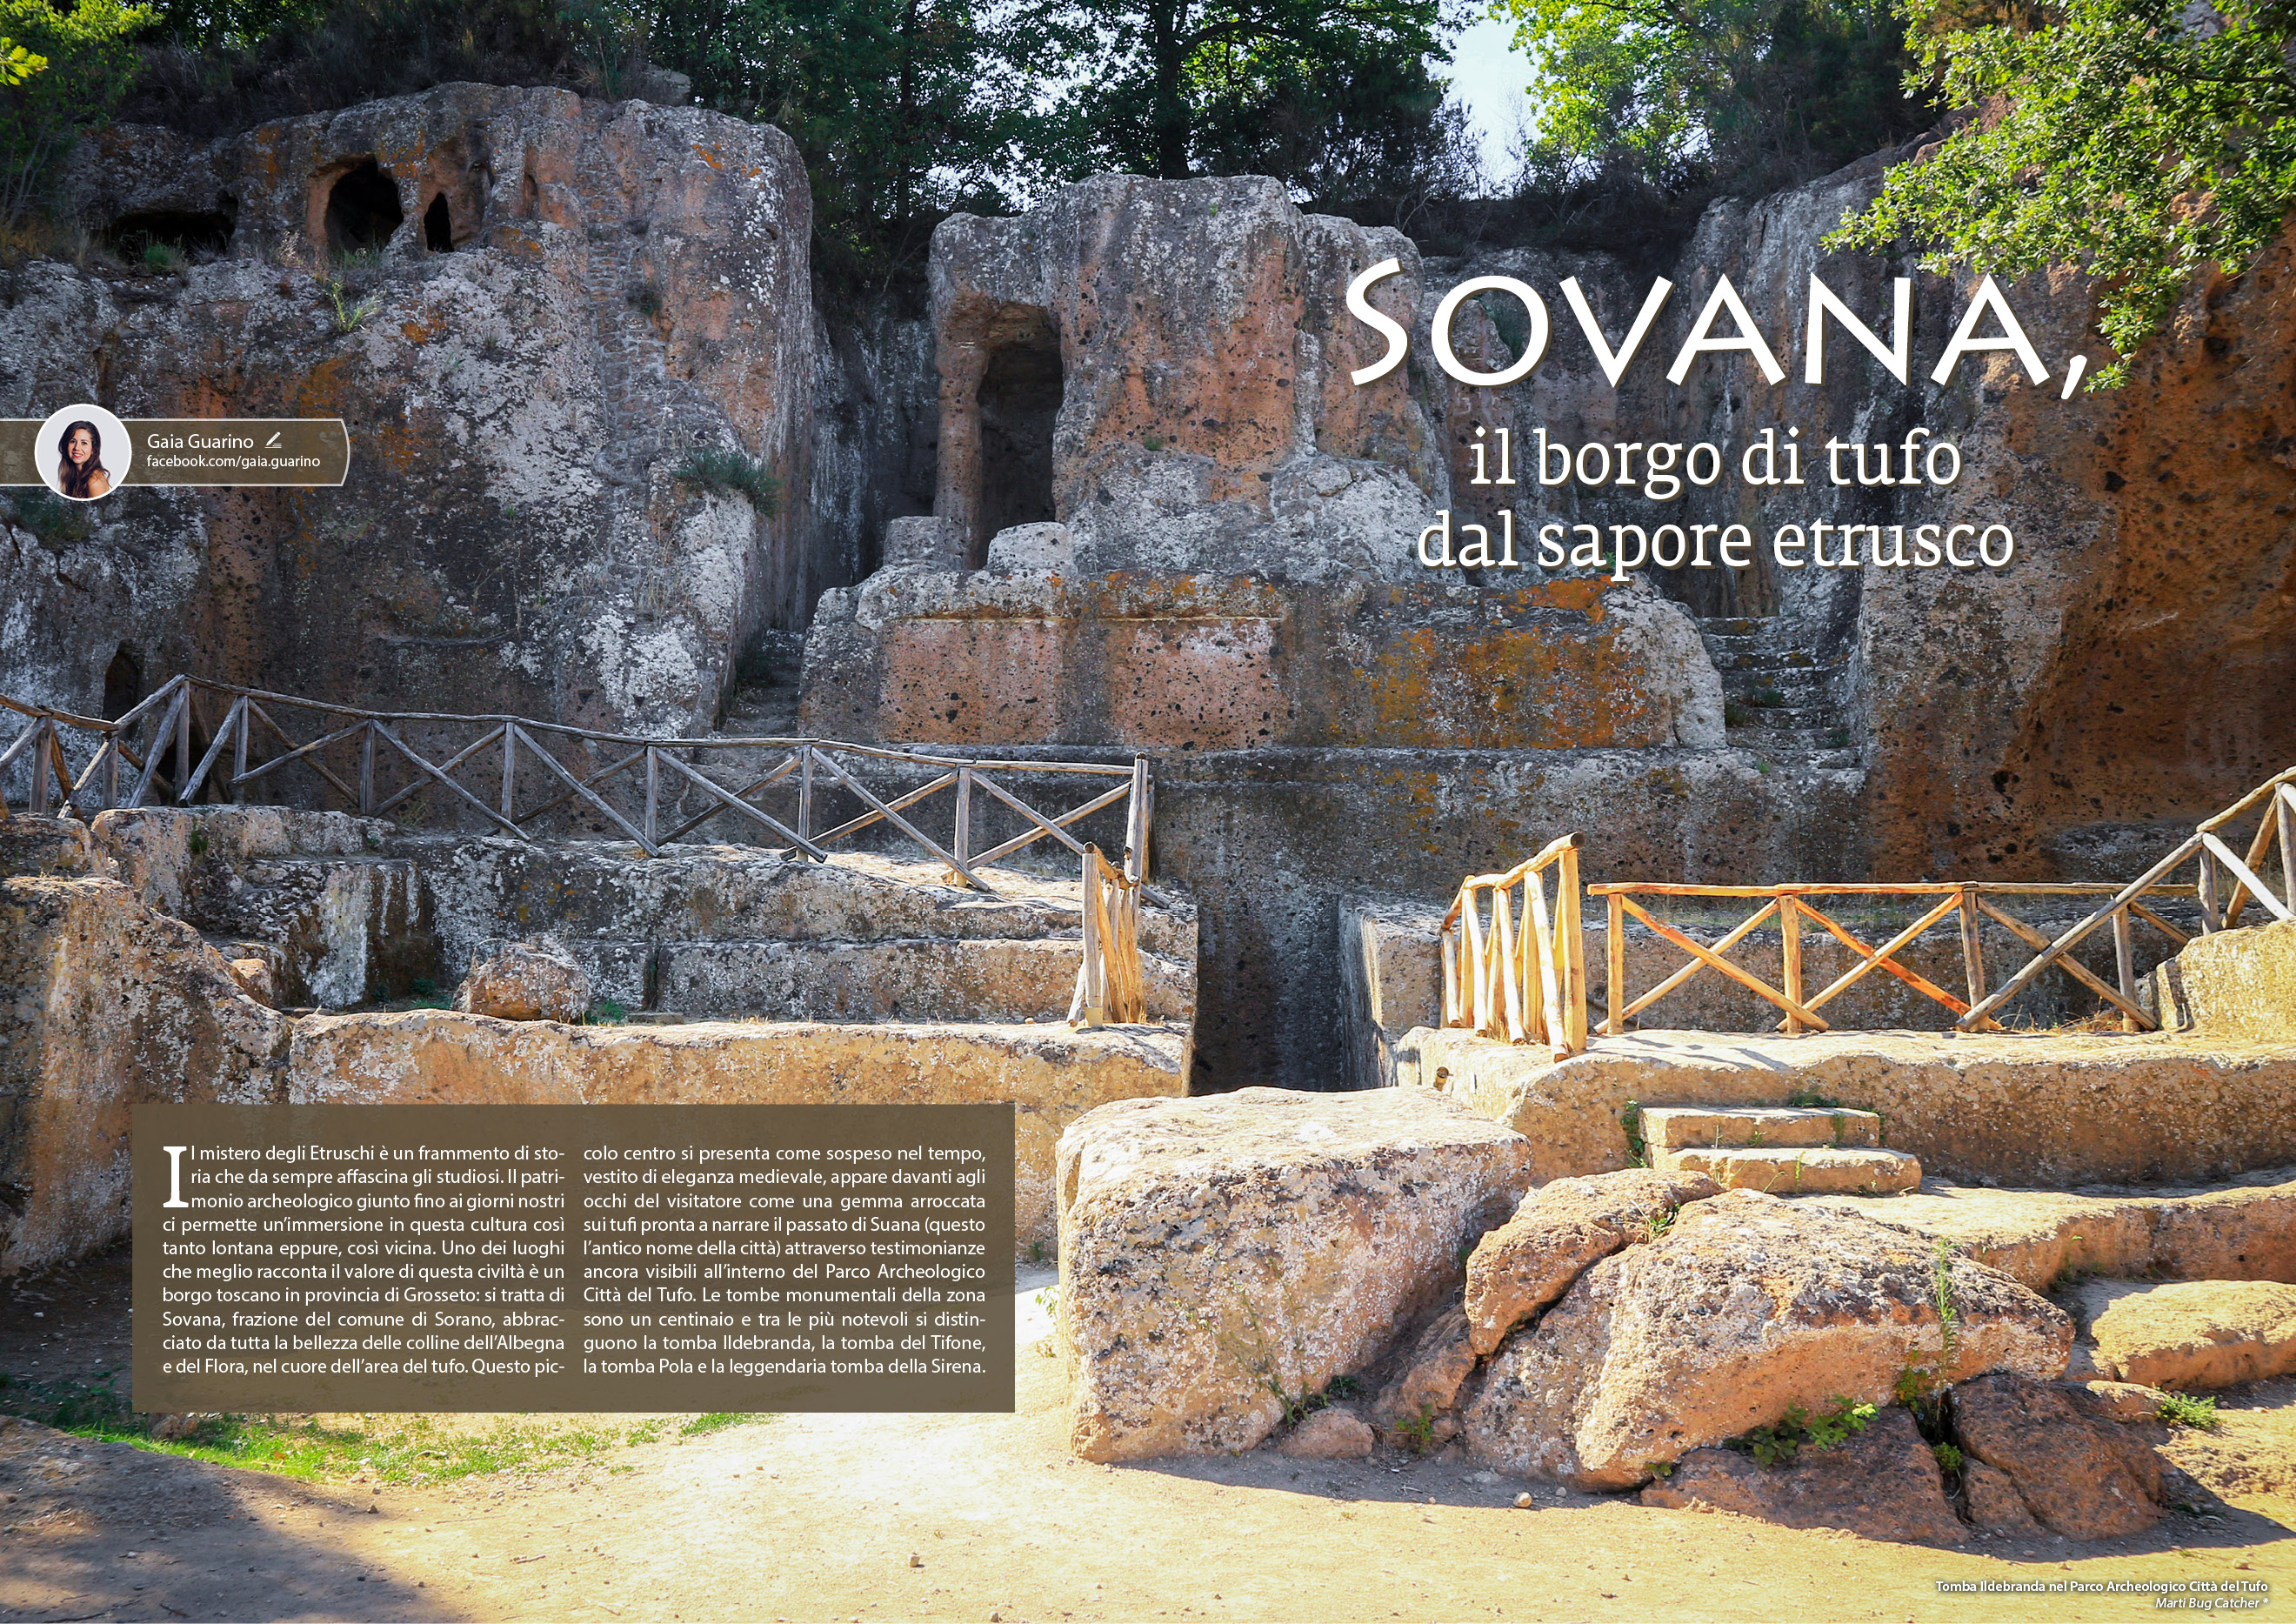 e-borghi travel 43: Speciale turismo attivo e slow - Sovana, il borgo di tufo dal sapore etrusco